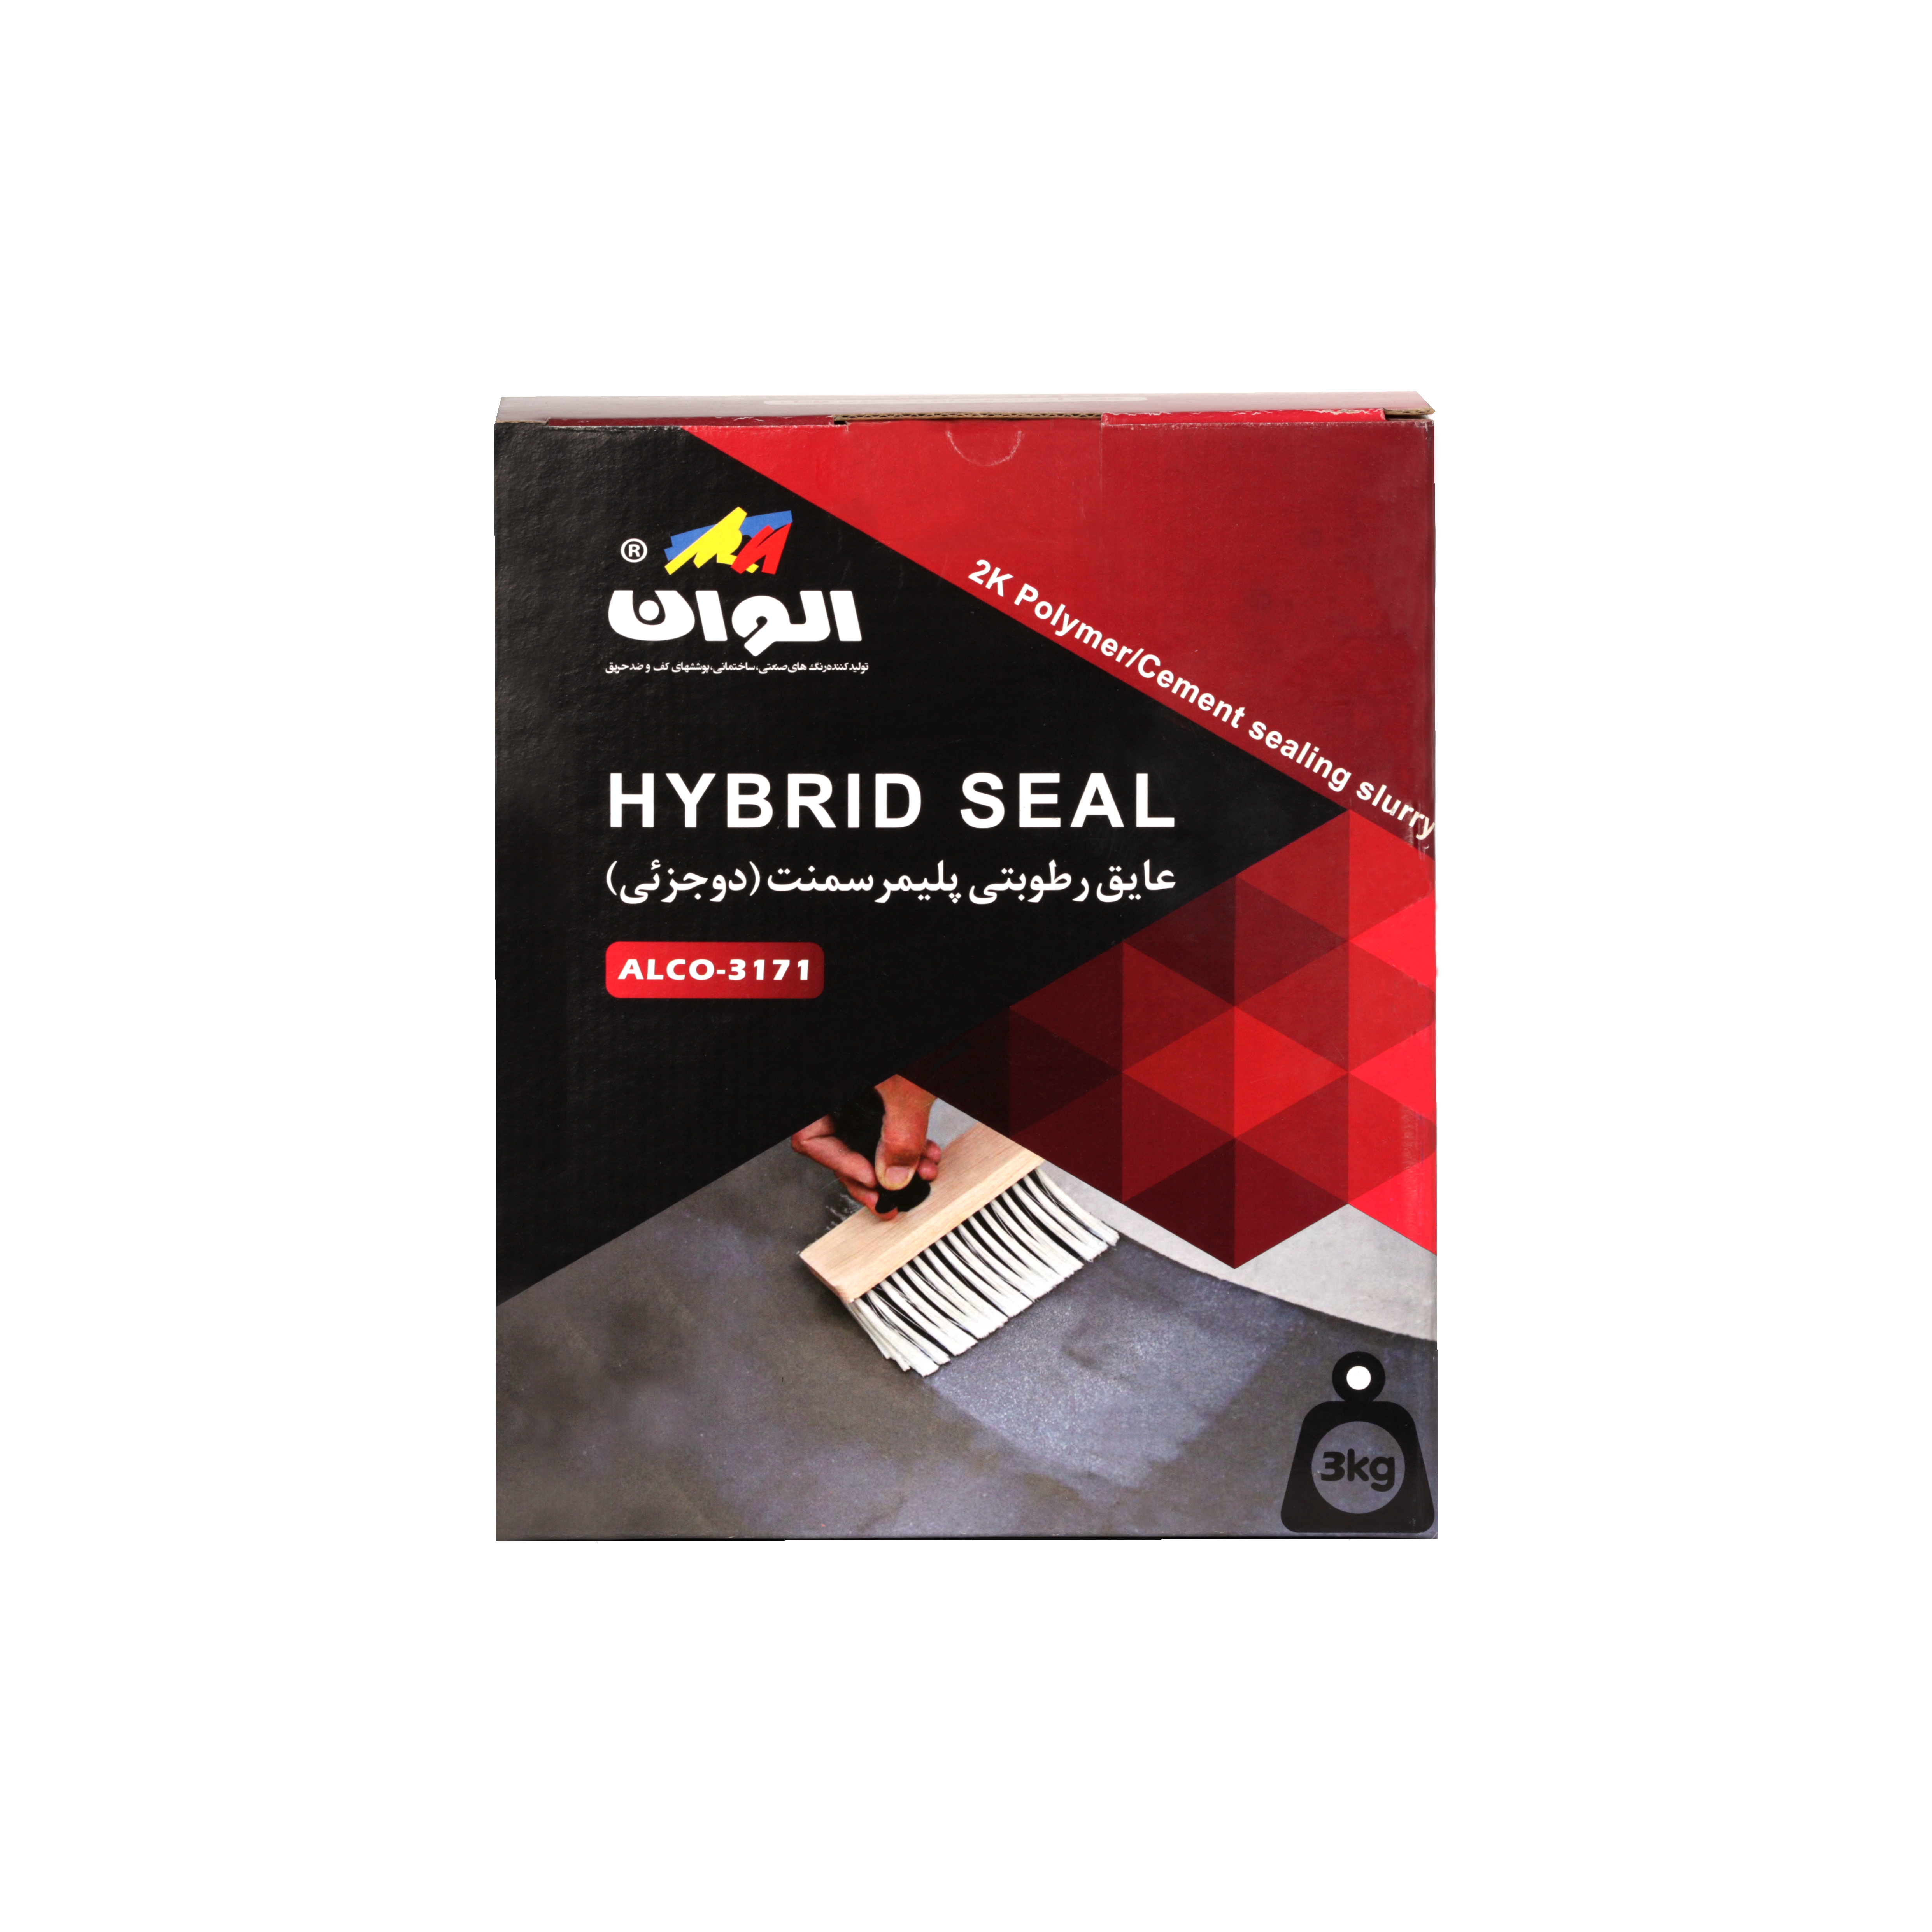 Hybrid Seal